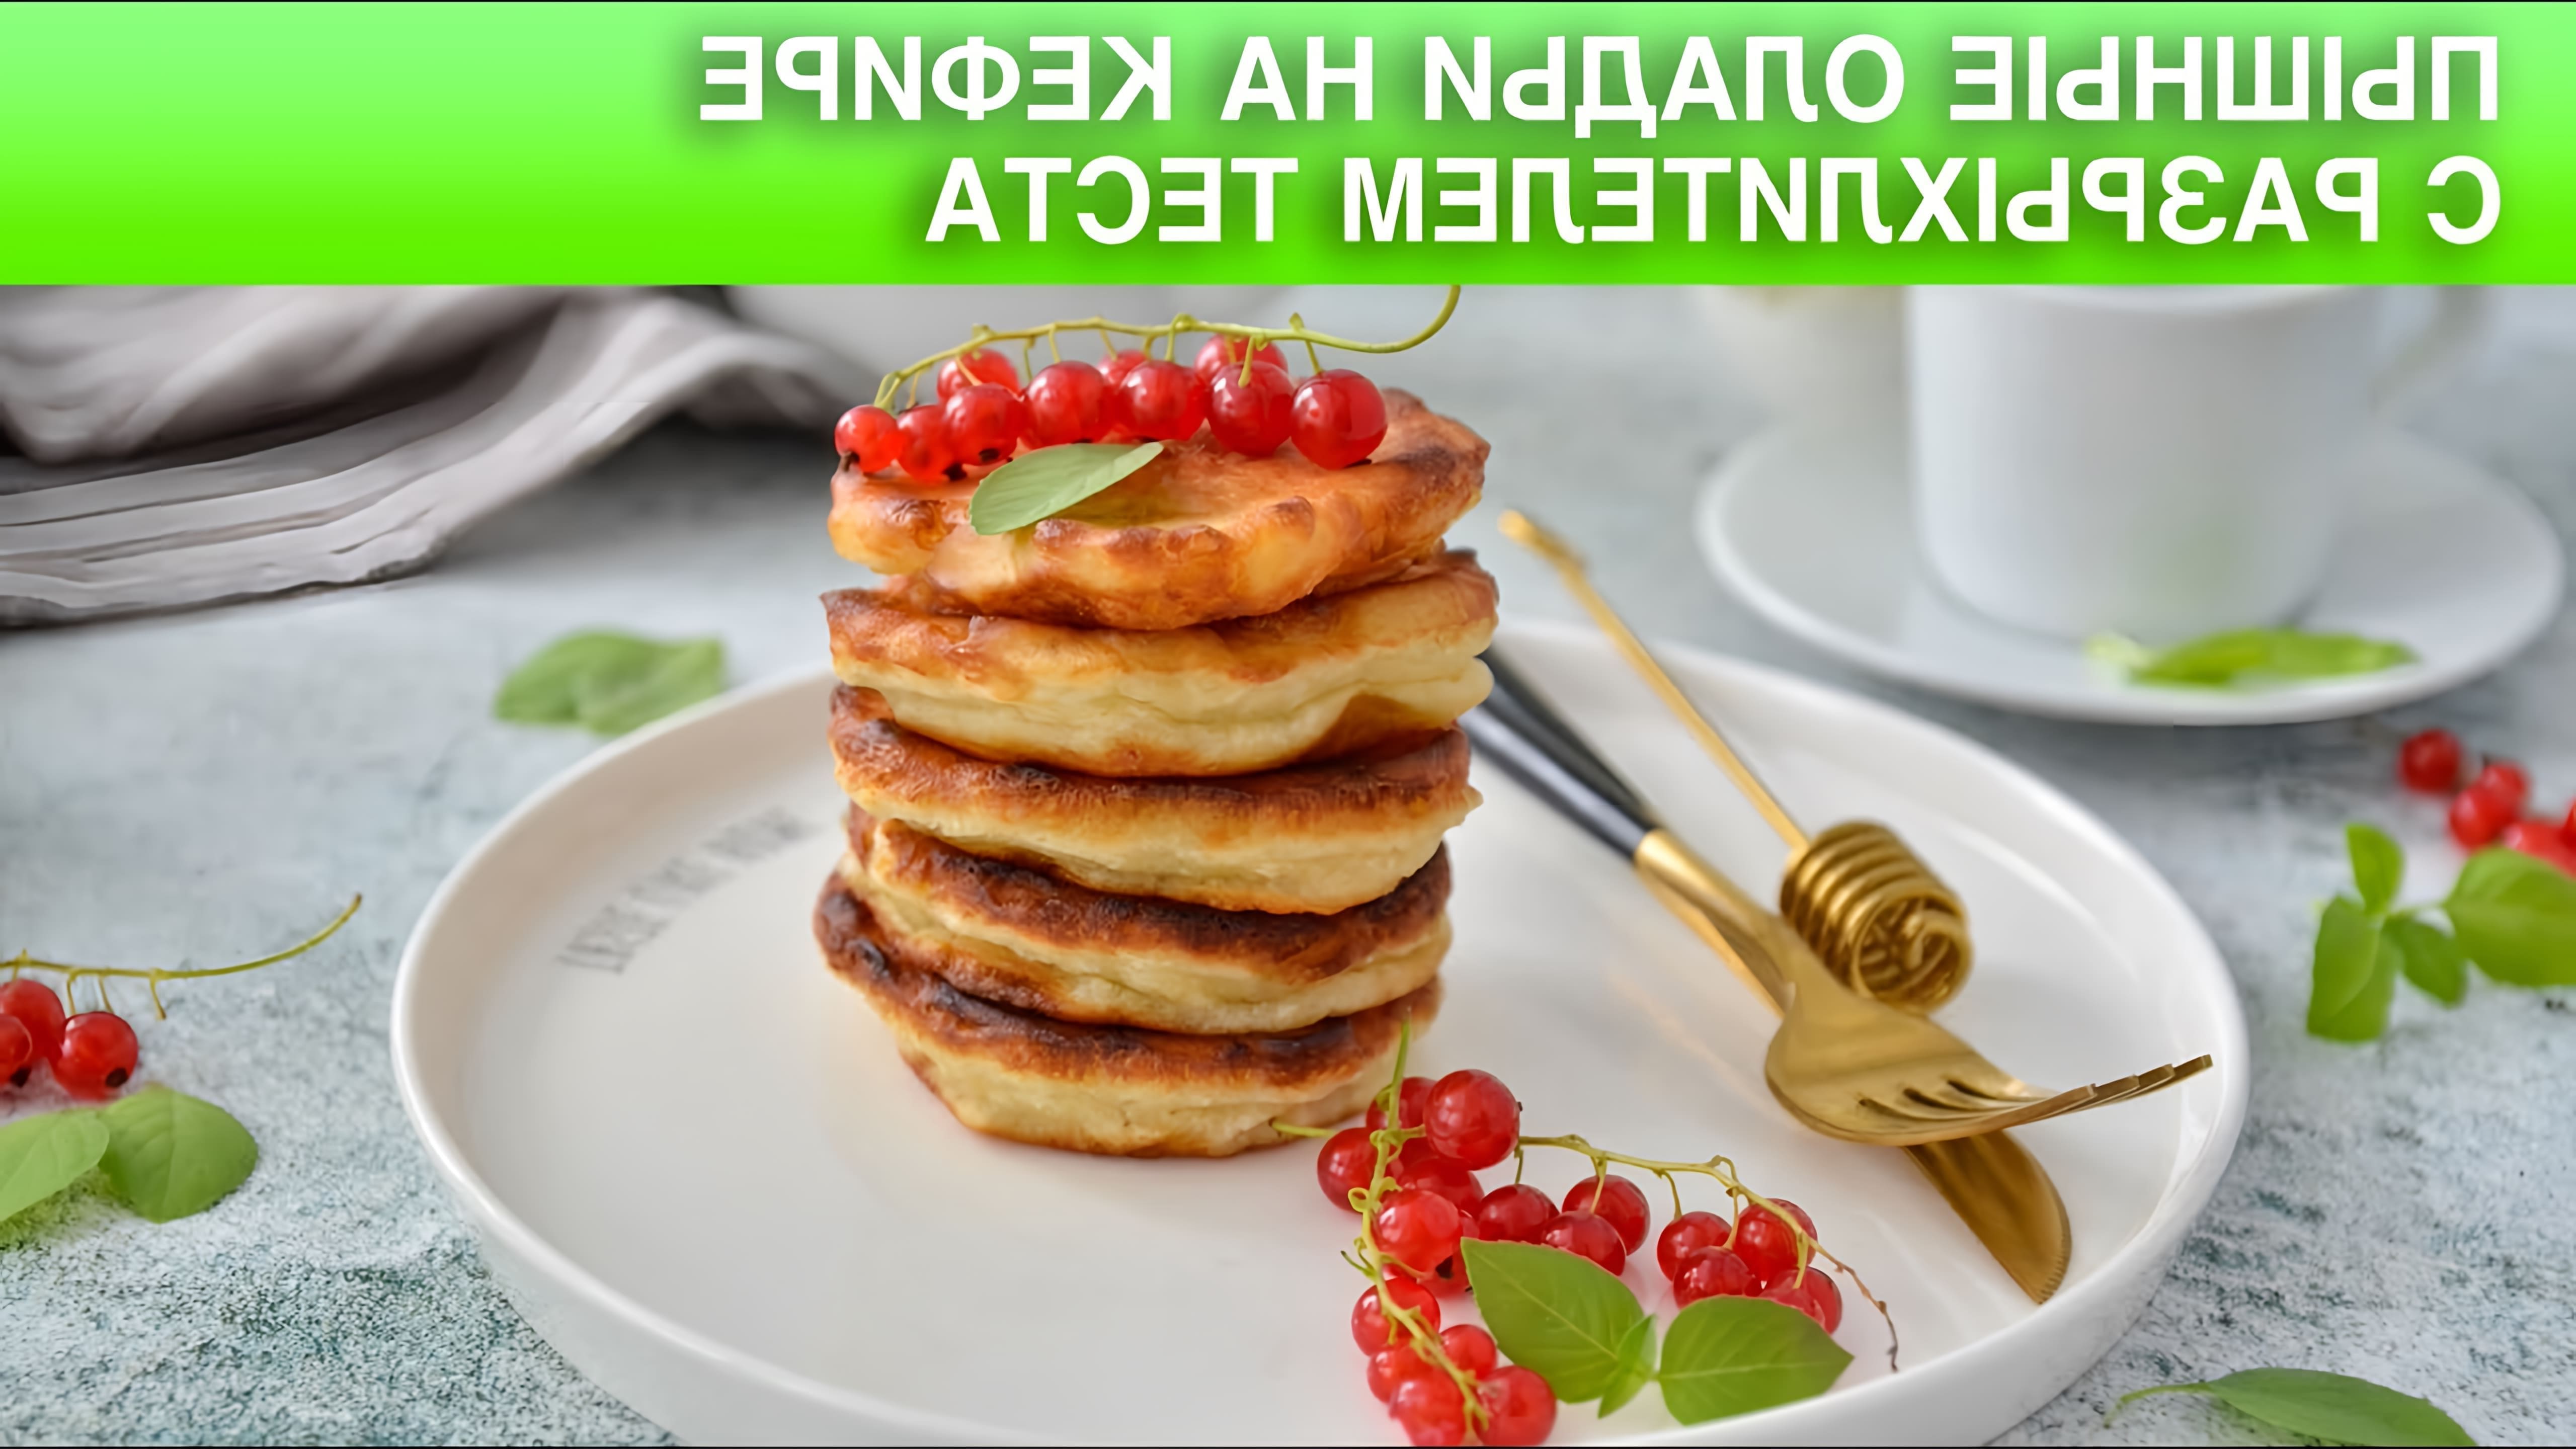 Оладьи #ОладьиНаКефире #ПростойРецепт #1000menu Самый вкусный завтрак для всей семьи - румяные оладушки! 